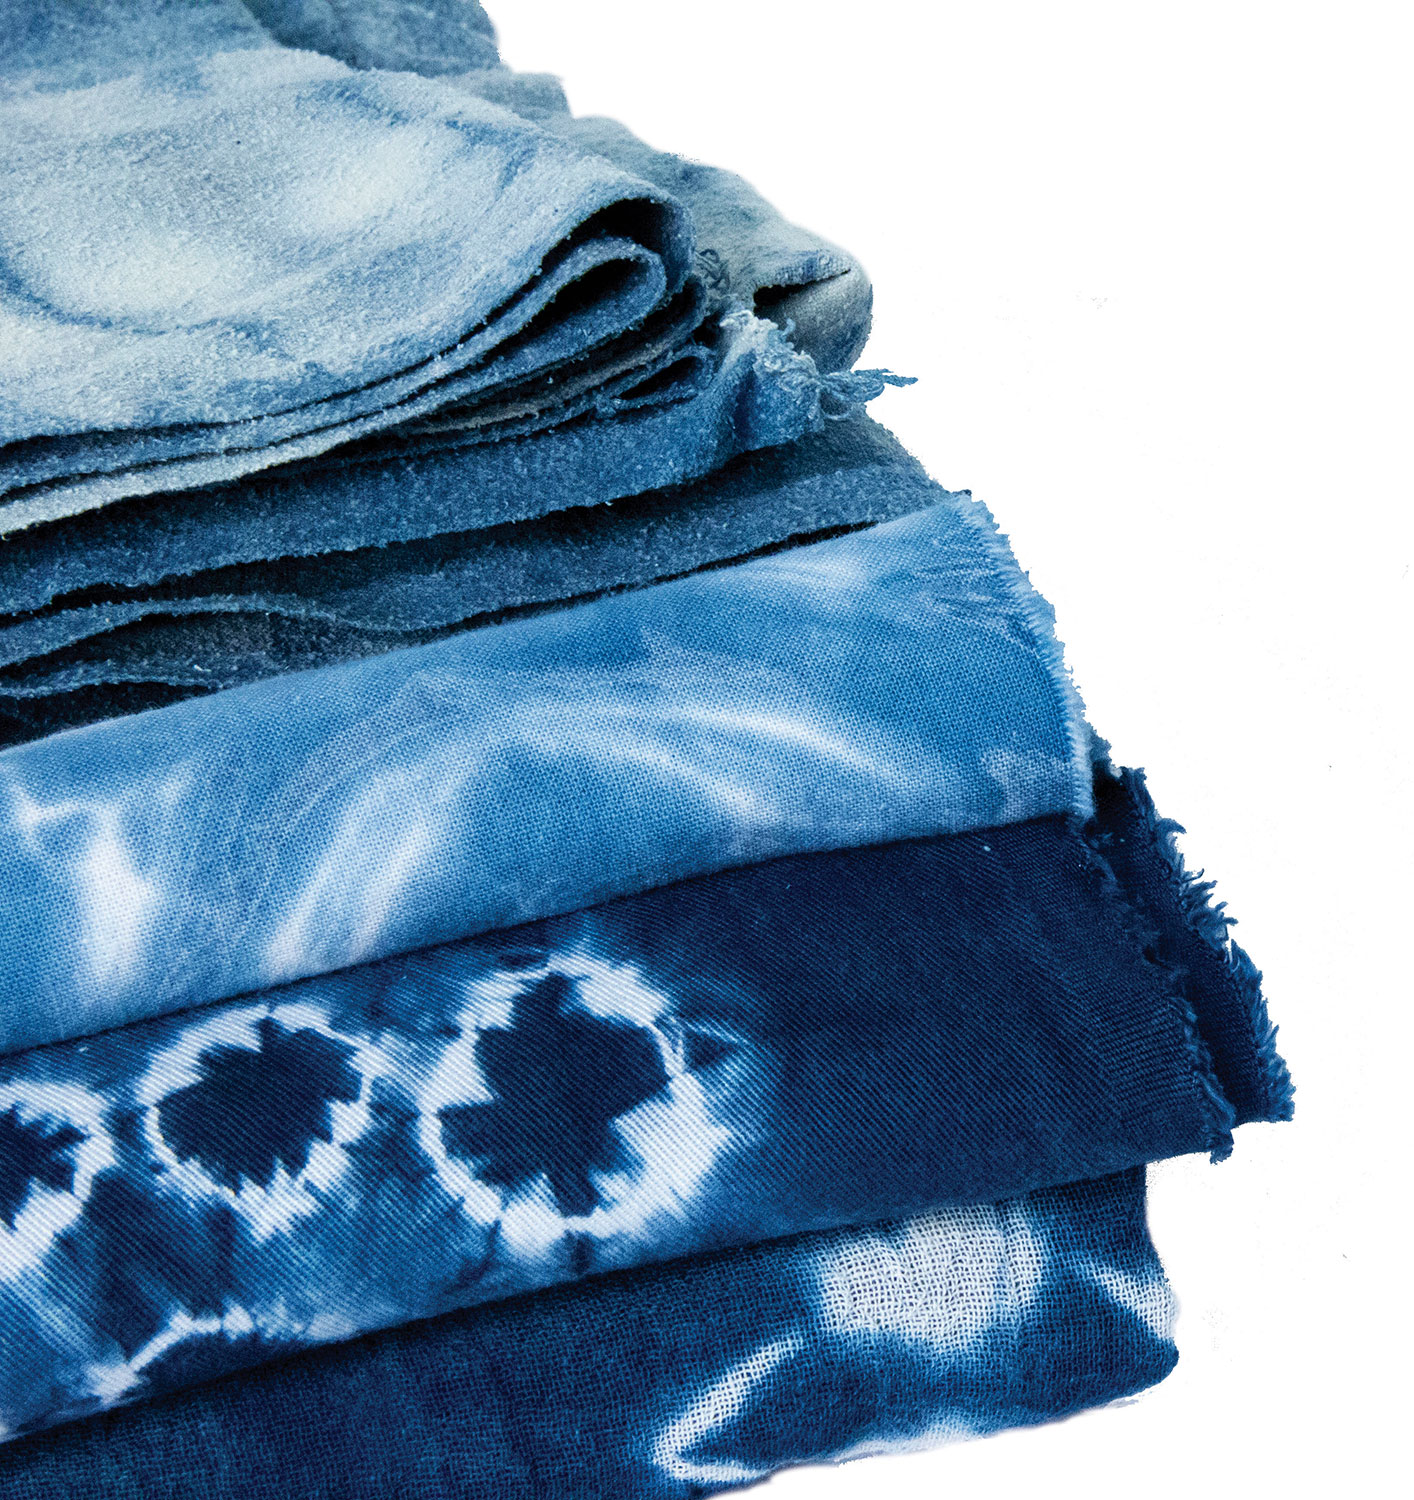  Jacquard Indigo Dye - 8 Oz Pre Reduced Indigo - Create Your Own  Shibori Bag, Indigo Macrame, Indigo Dye Pillow, and More - Blue Dye Fabric